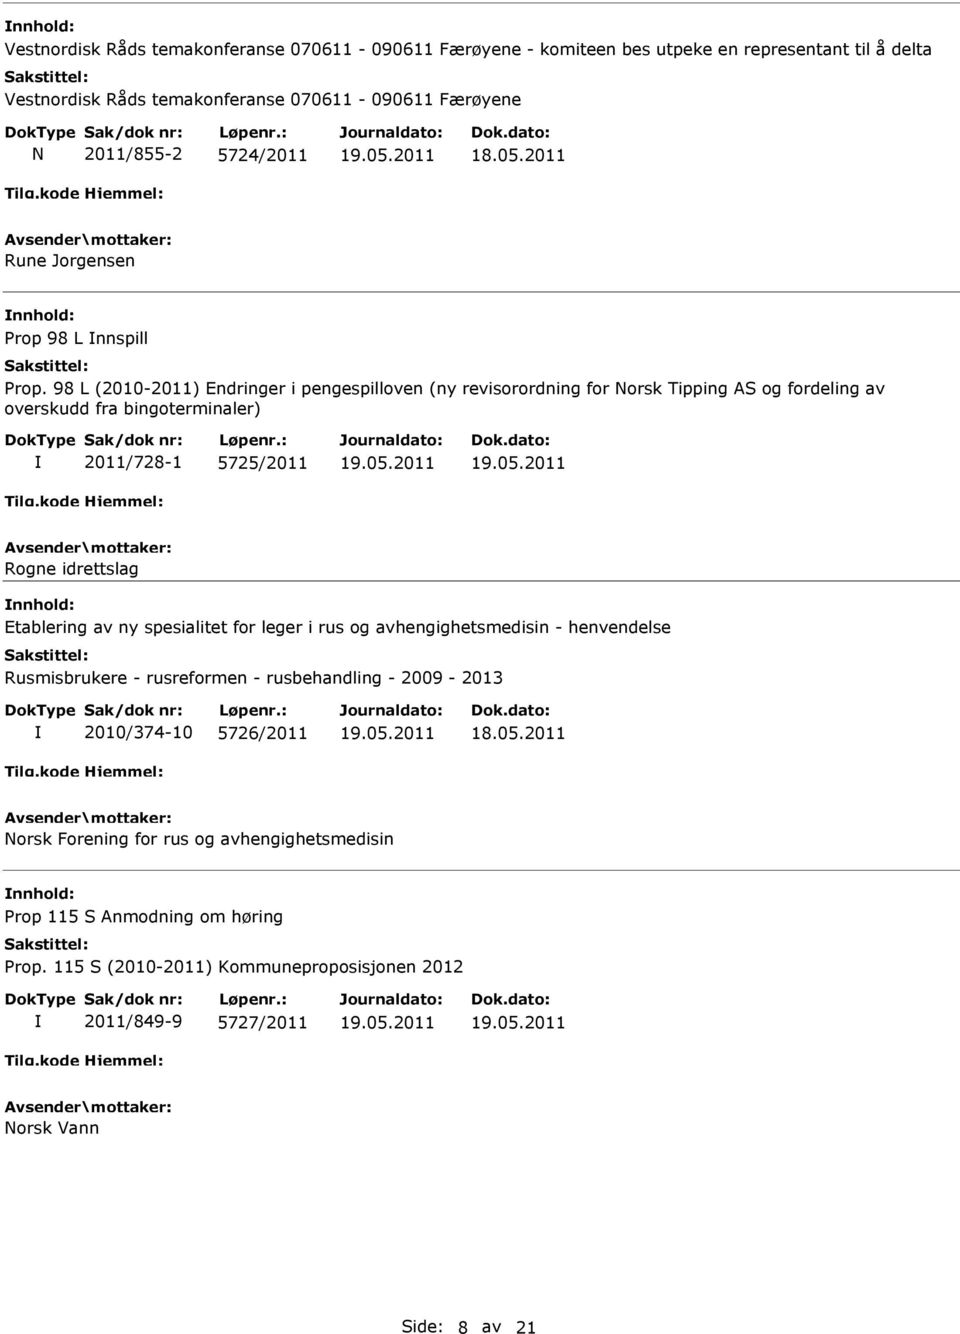 98 L (2010-2011) Endringer i pengespilloven (ny revisorordning for Norsk Tipping AS og fordeling av overskudd fra bingoterminaler) 2011/728-1 5725/2011 Rogne idrettslag Etablering